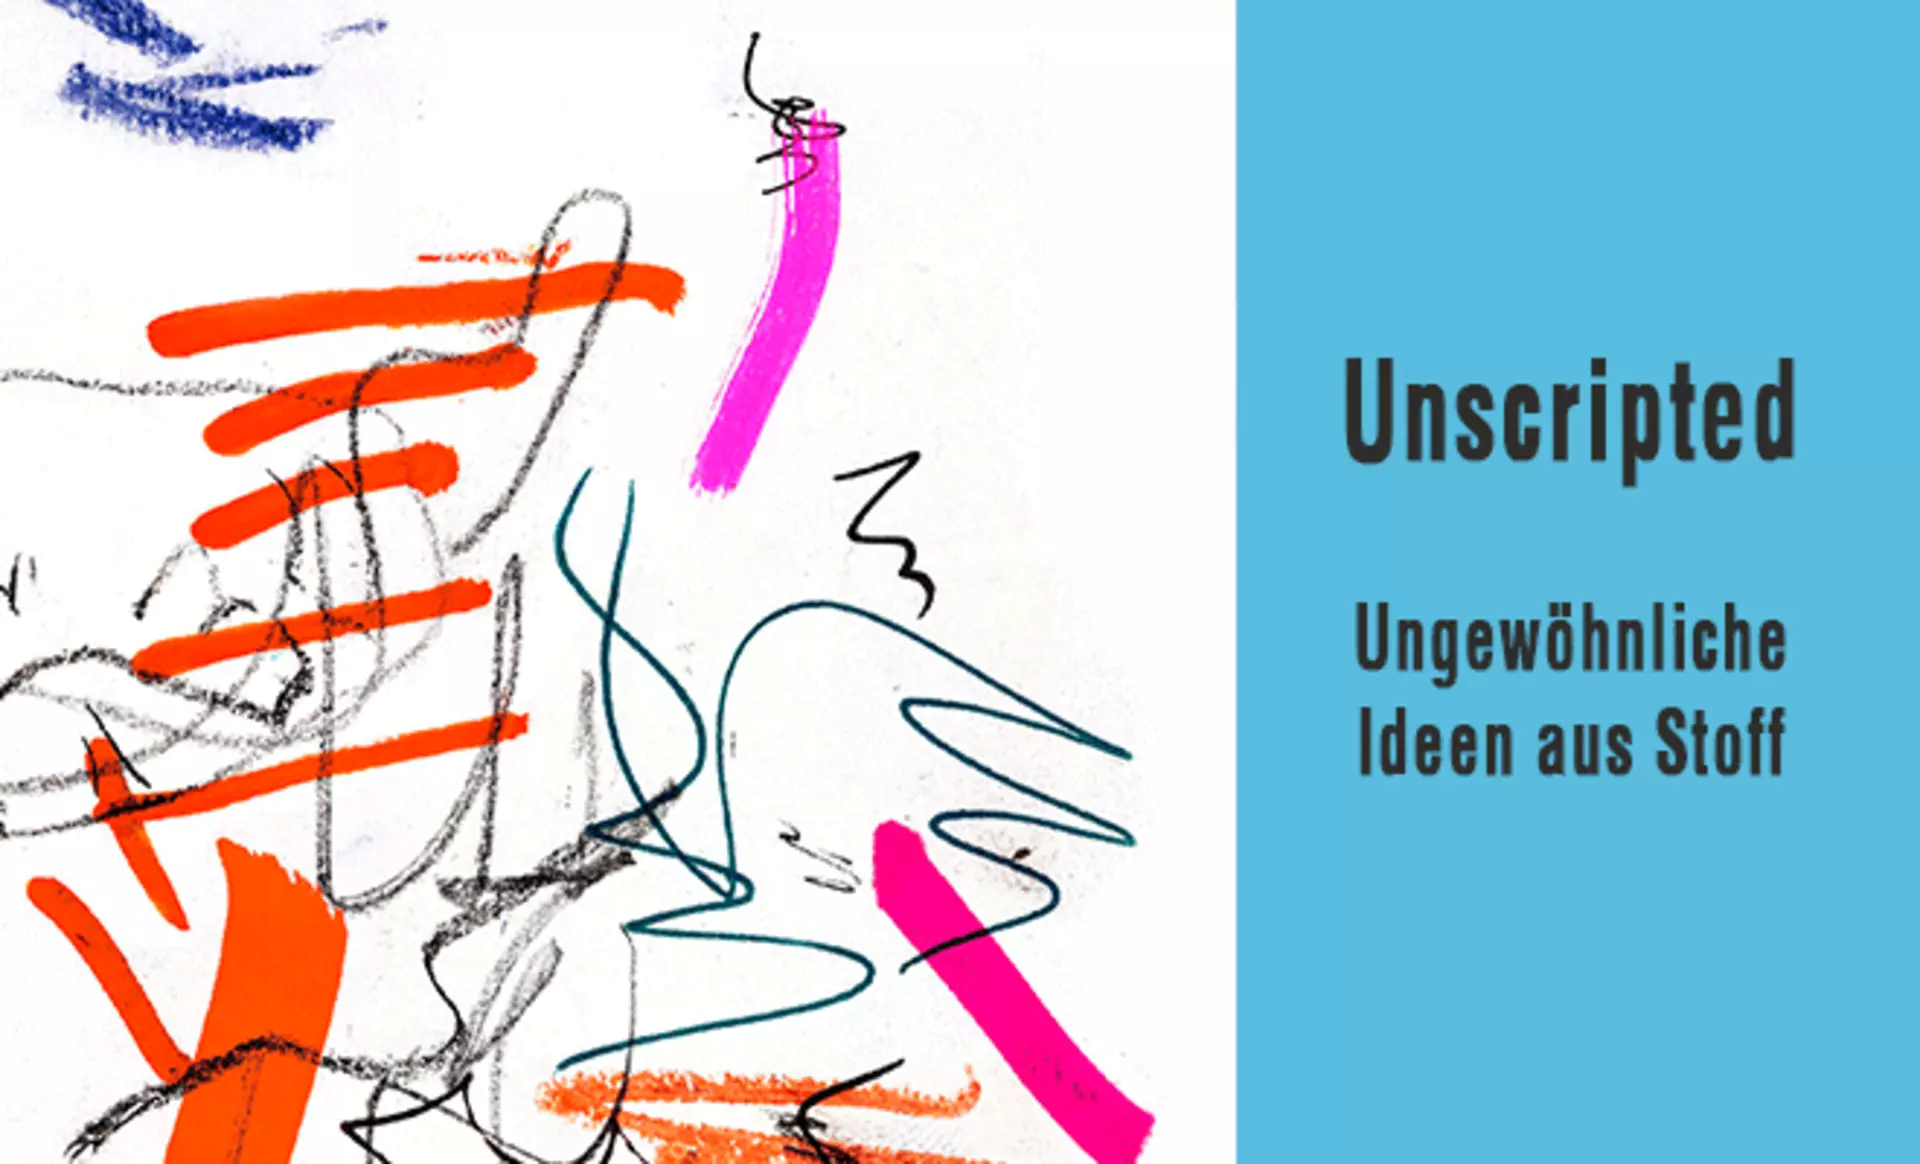 Teaserbild zur Inspirationsseite "Unscripted" - ungewöhnliche Ideen aus Stoff von Kvadrat bei interni by inhofer